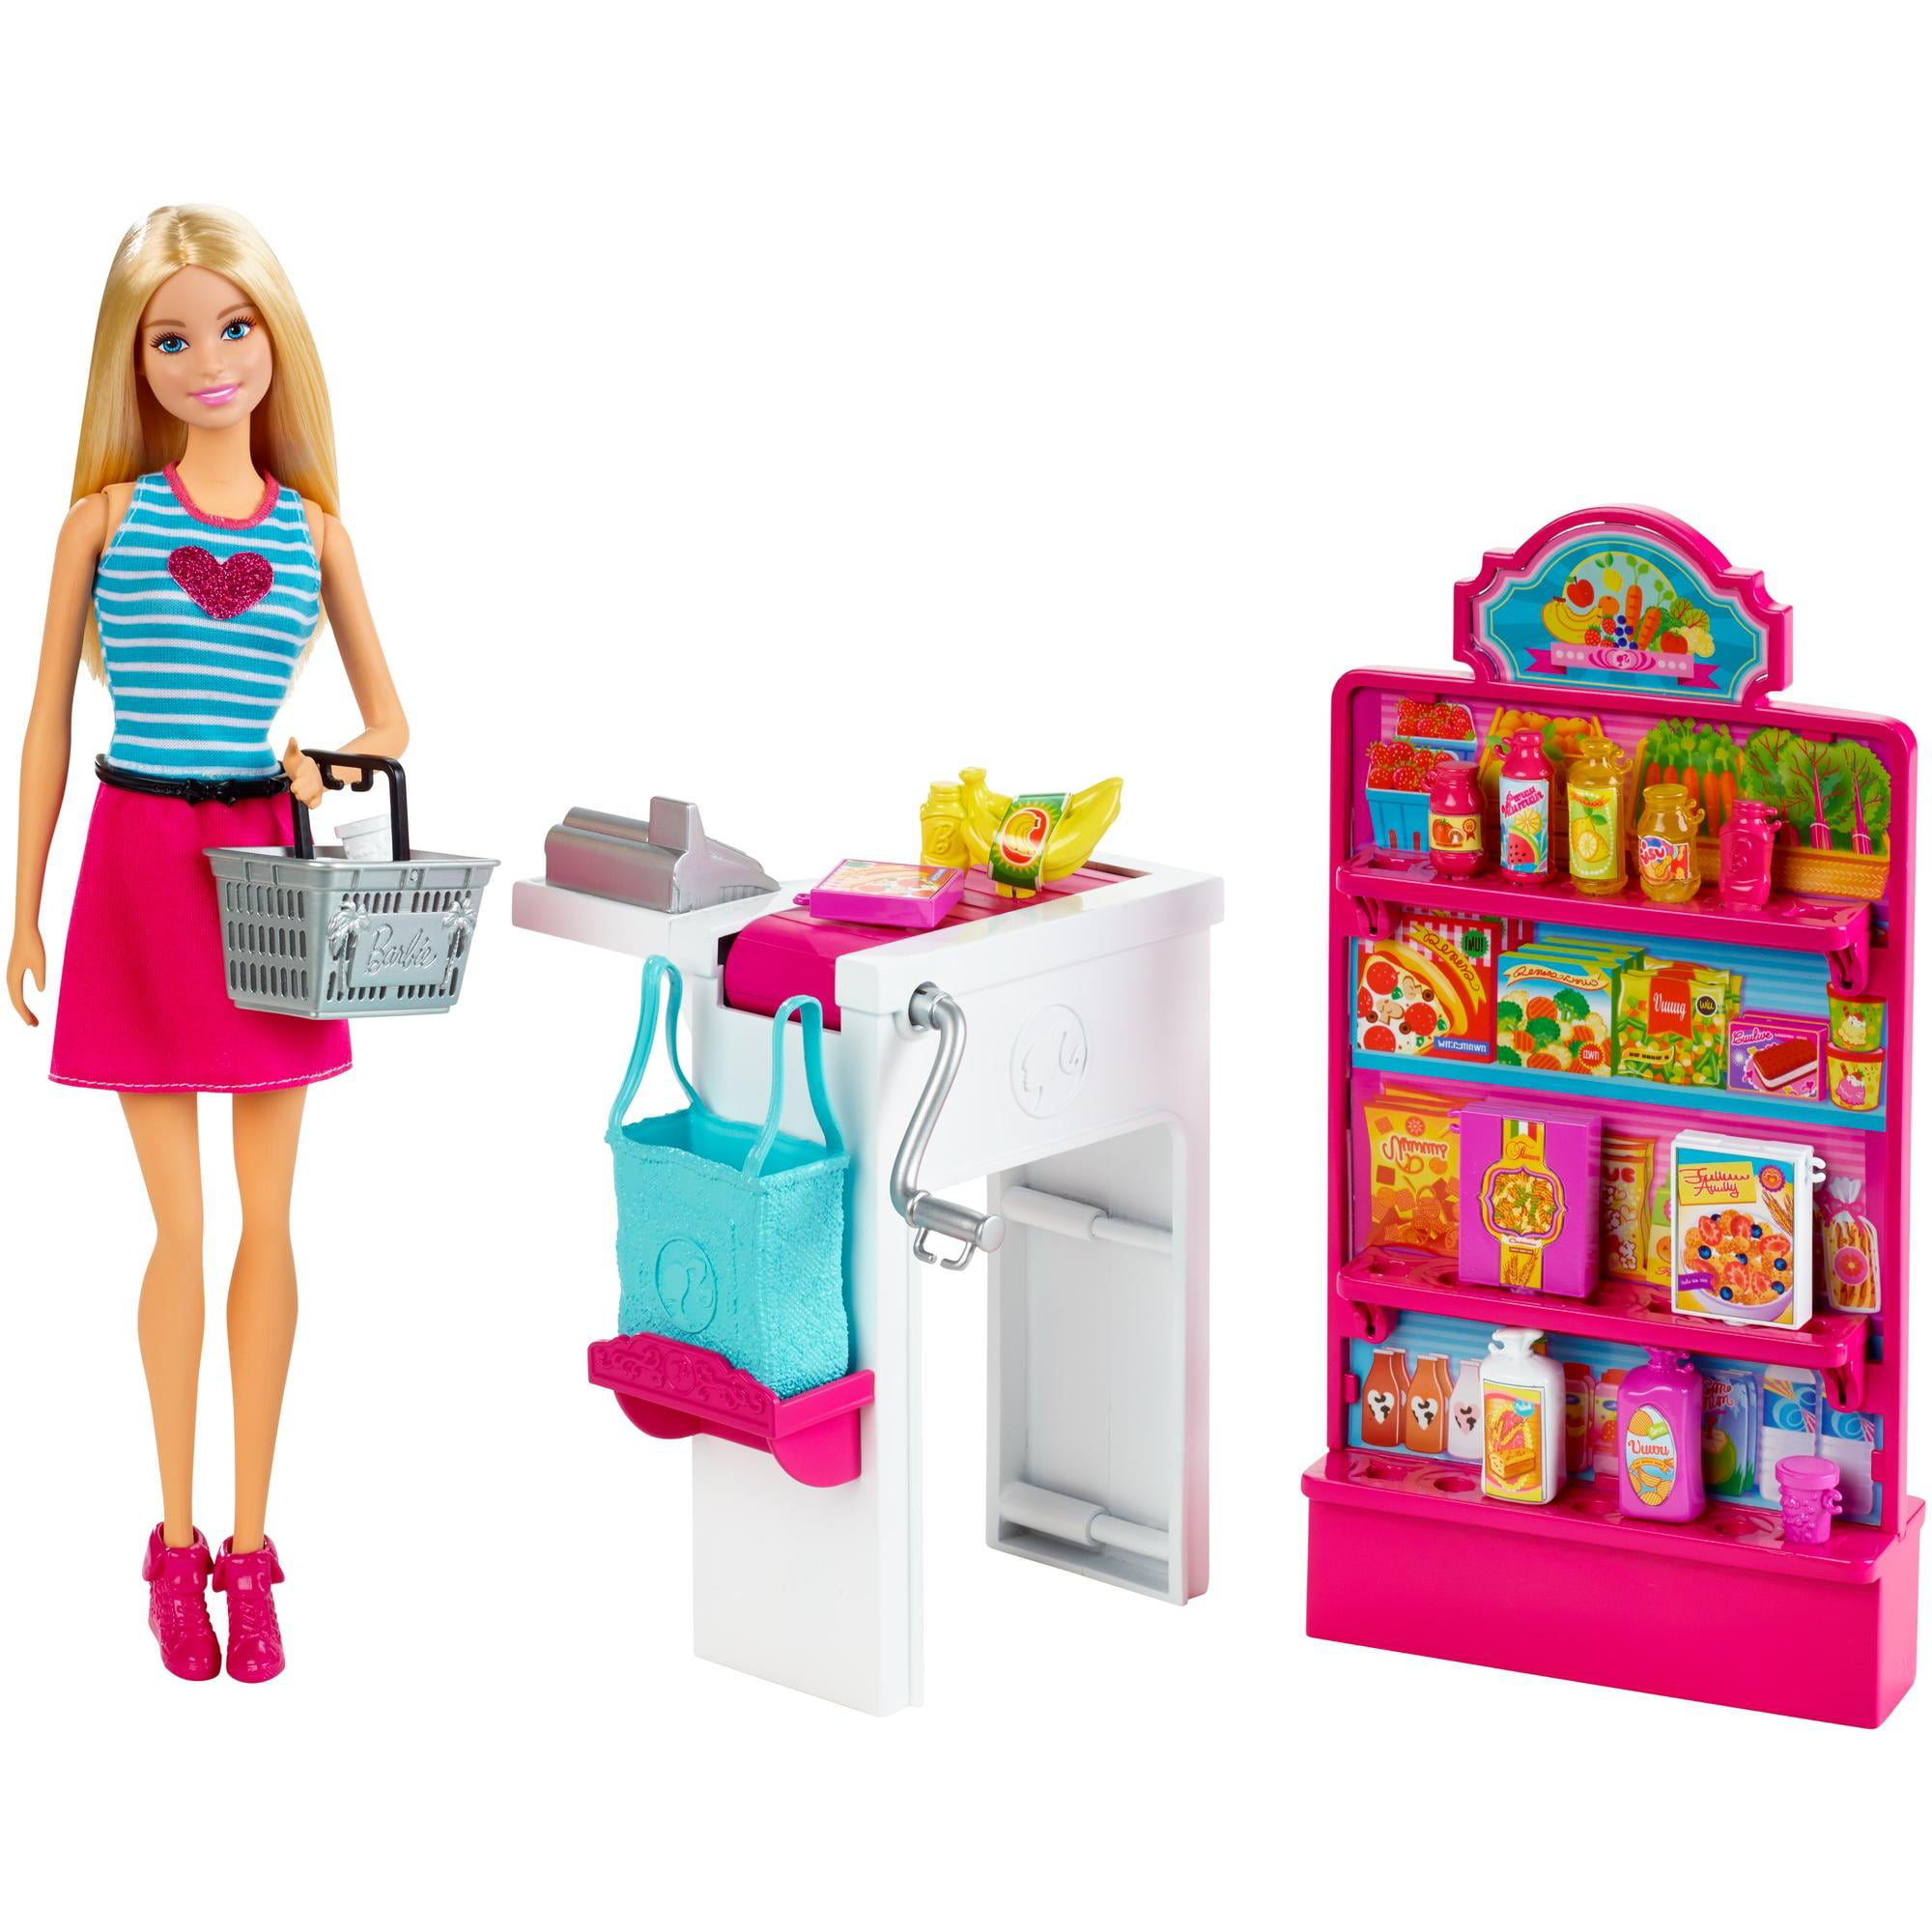 Включи барби есть. Набор Barbie продуктовый магазин Малибу, 29 см, ckp77. Barbie Malibu набор. Куклы Барби плейсет. Игровой набор Barbie продуктовая Лавка.